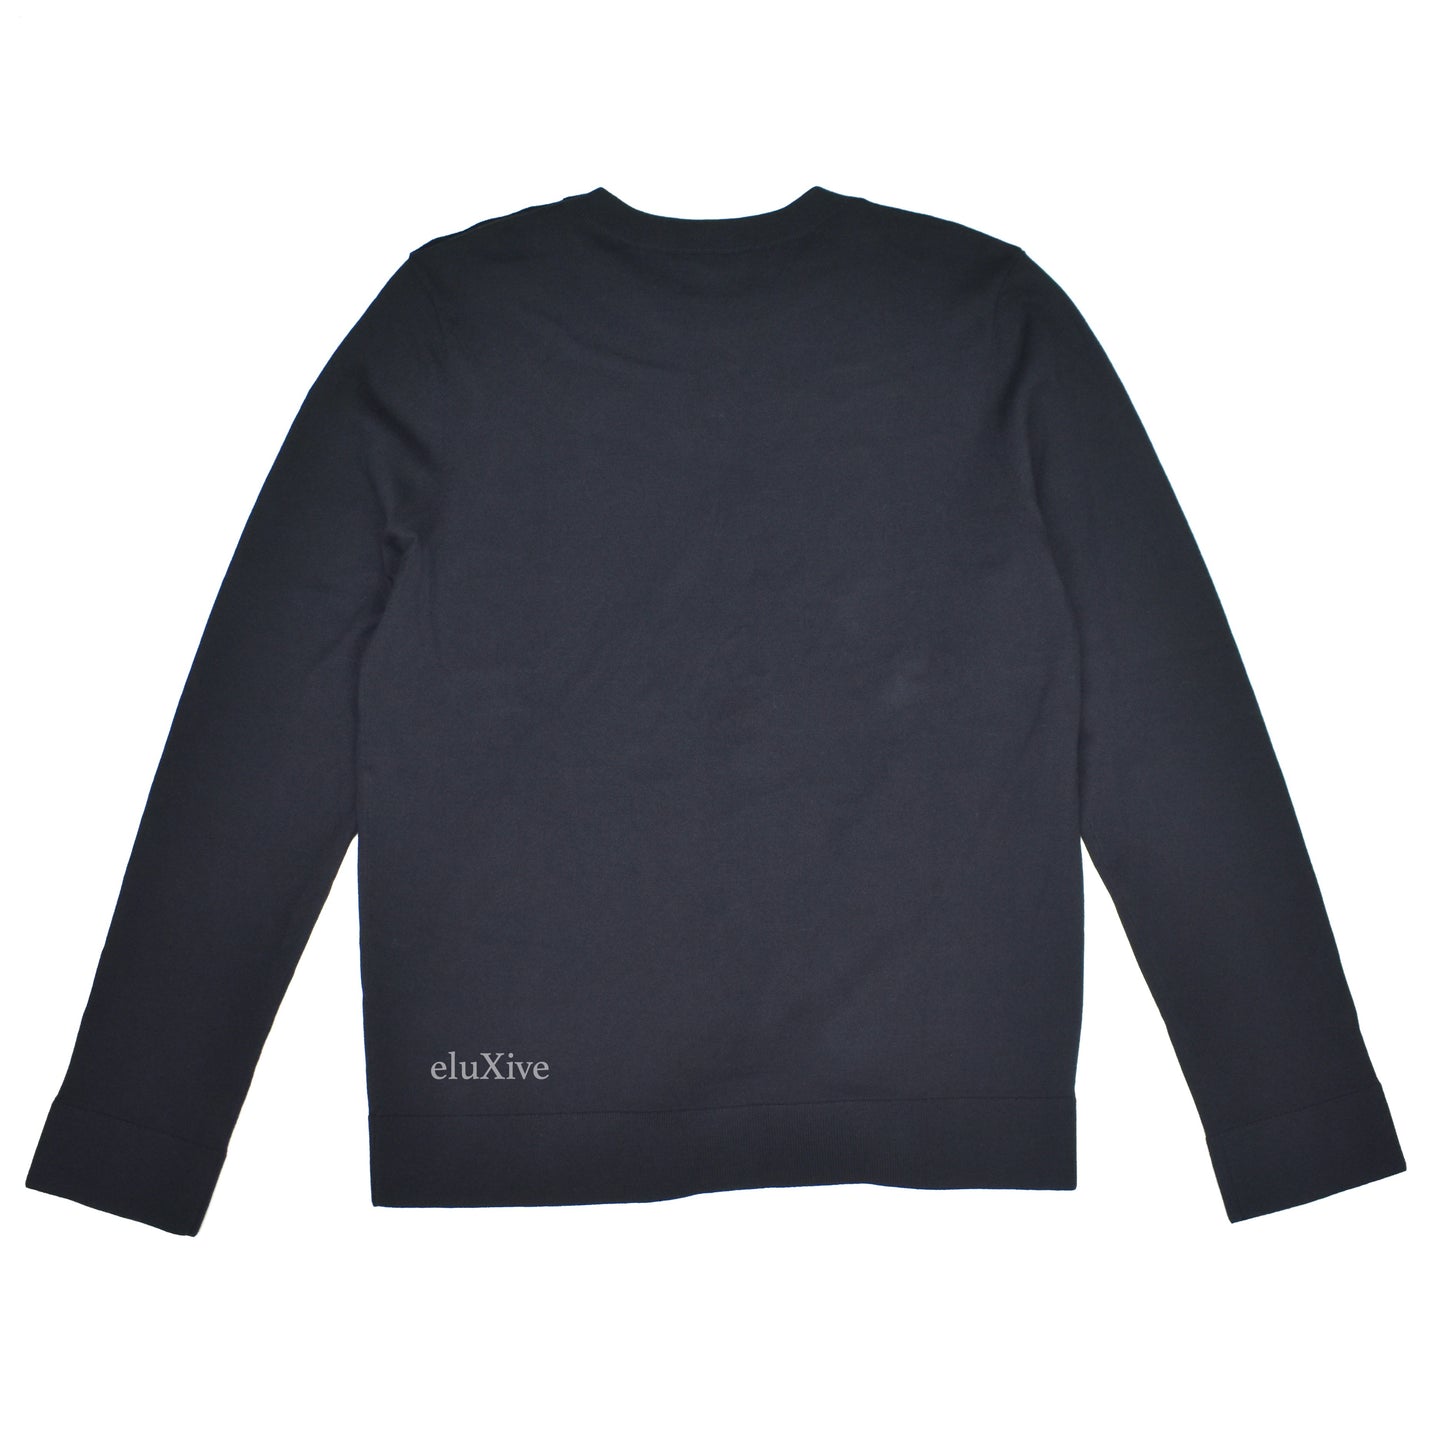 Chanel - Black Wool/Cotton CC Shoulder Button Uniform Sweater